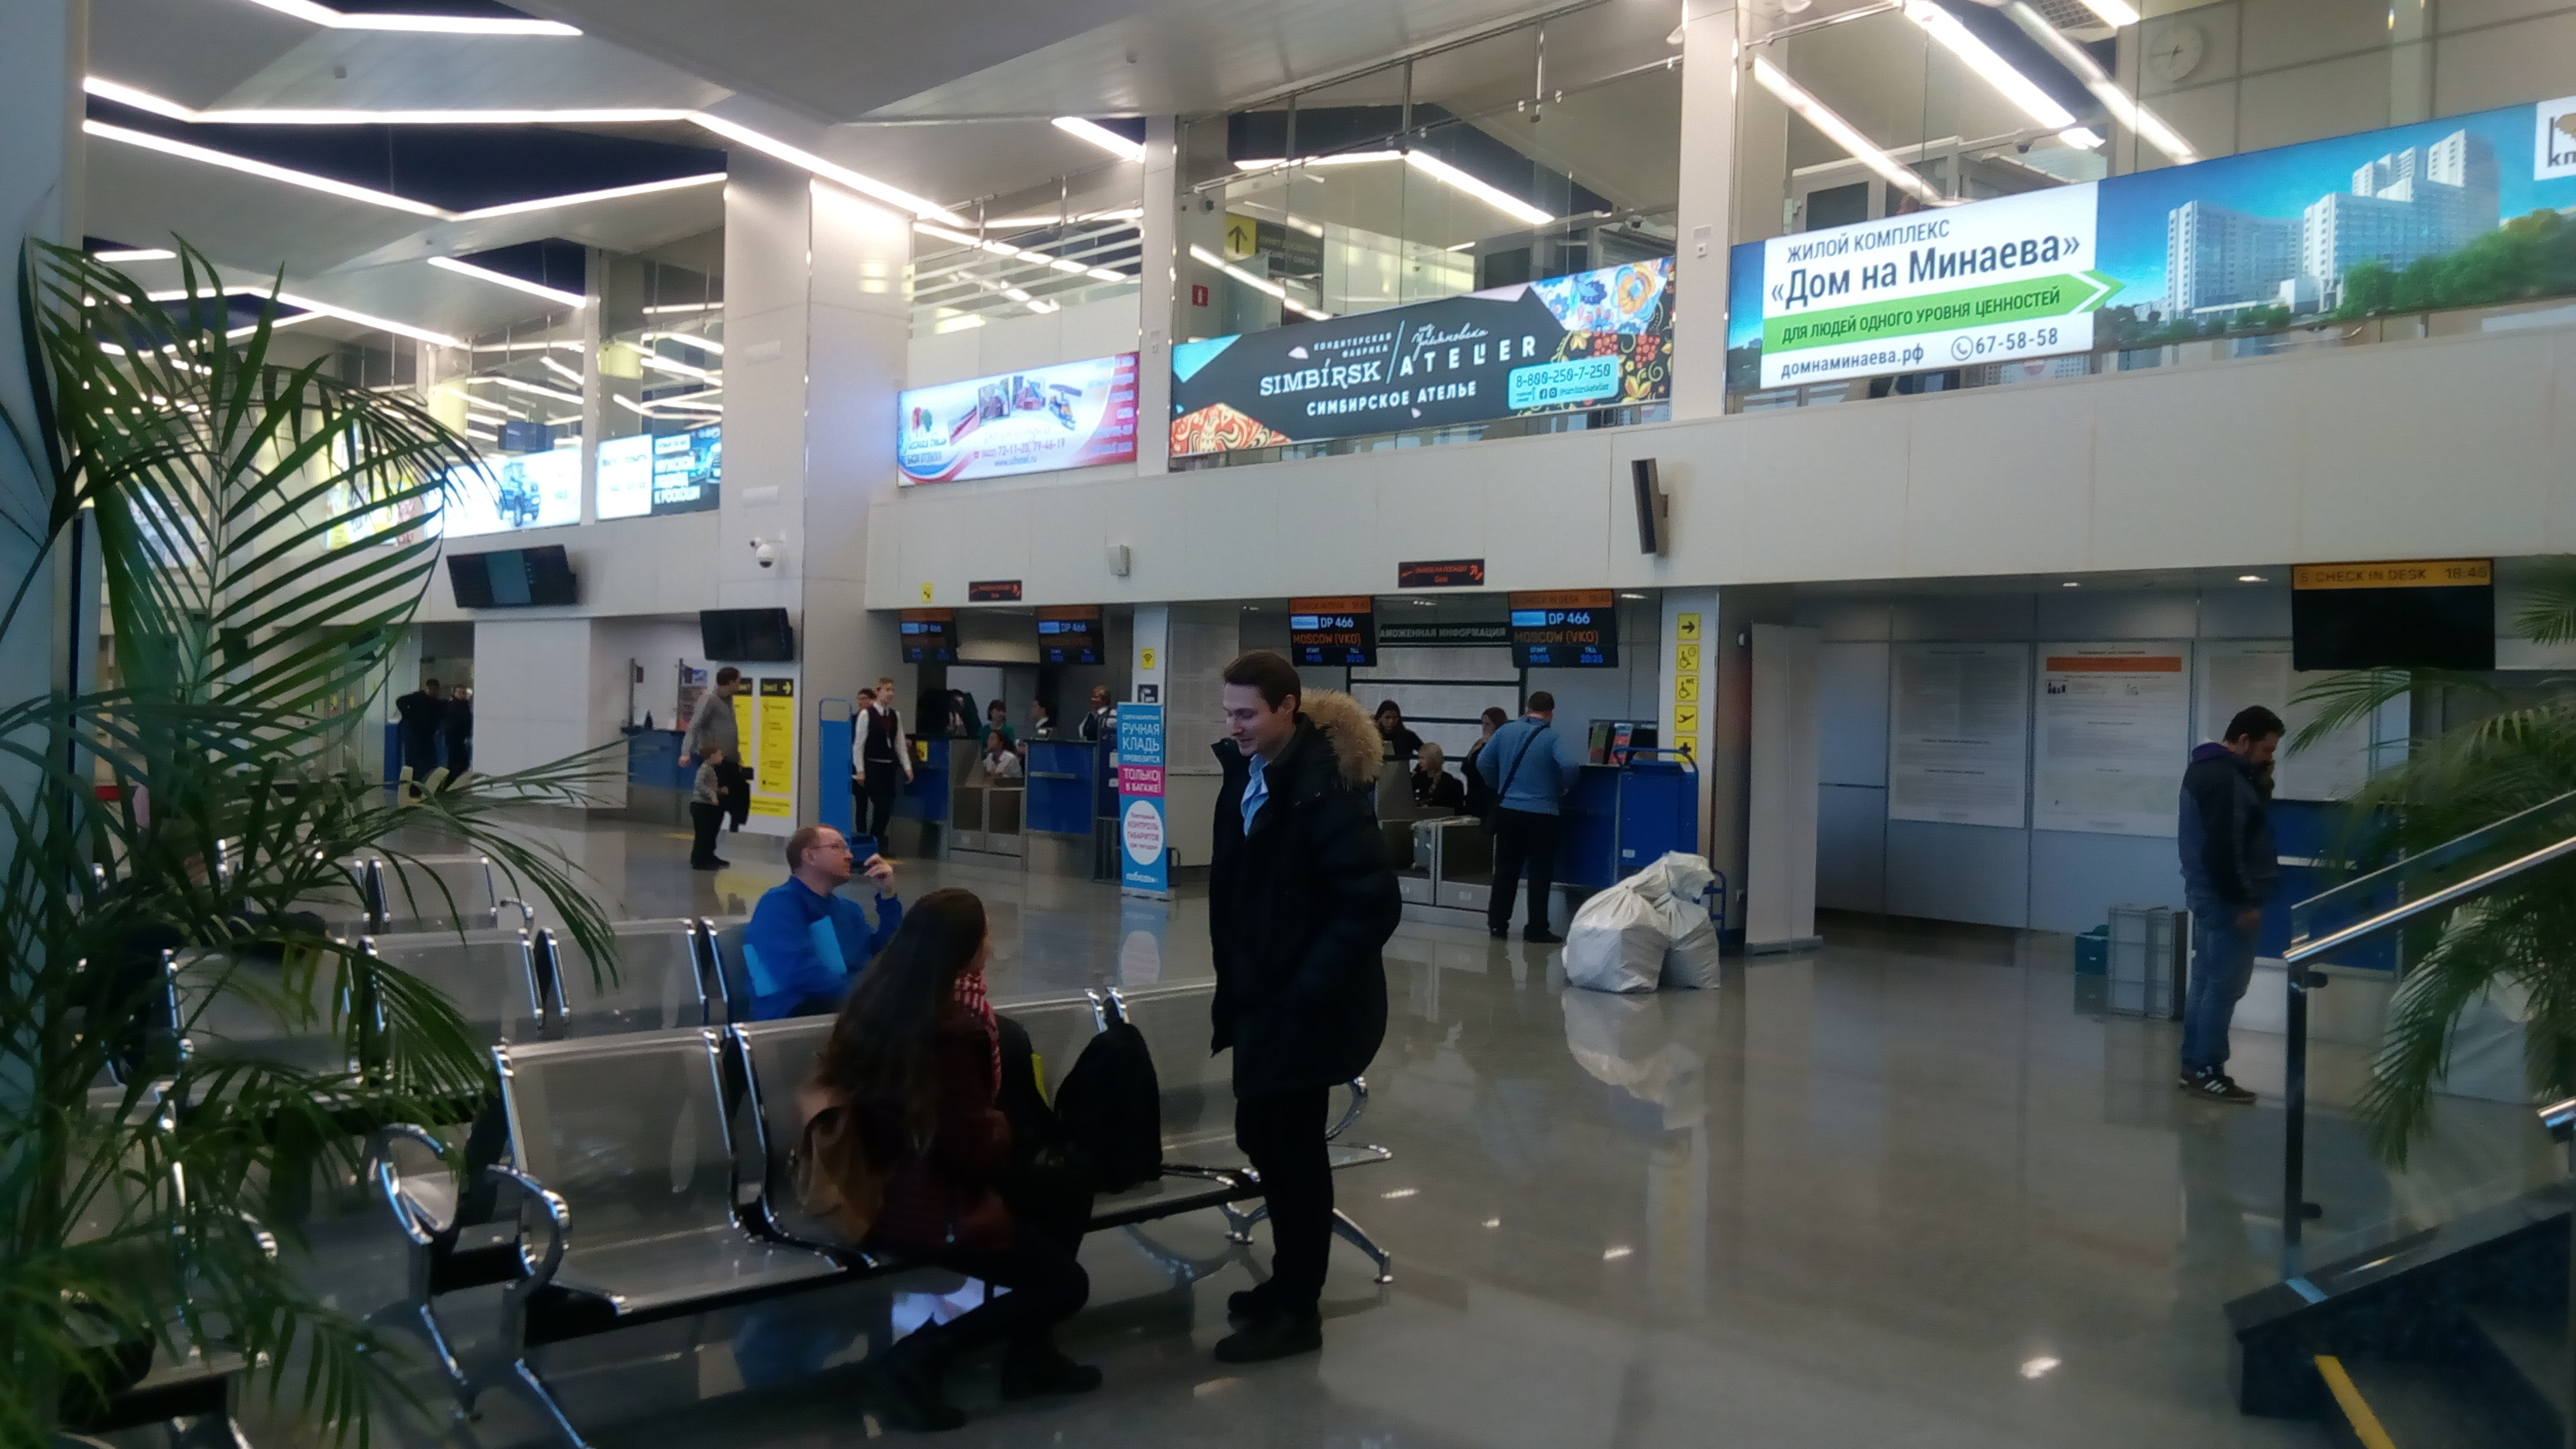 аэропорт в ульяновске восточный